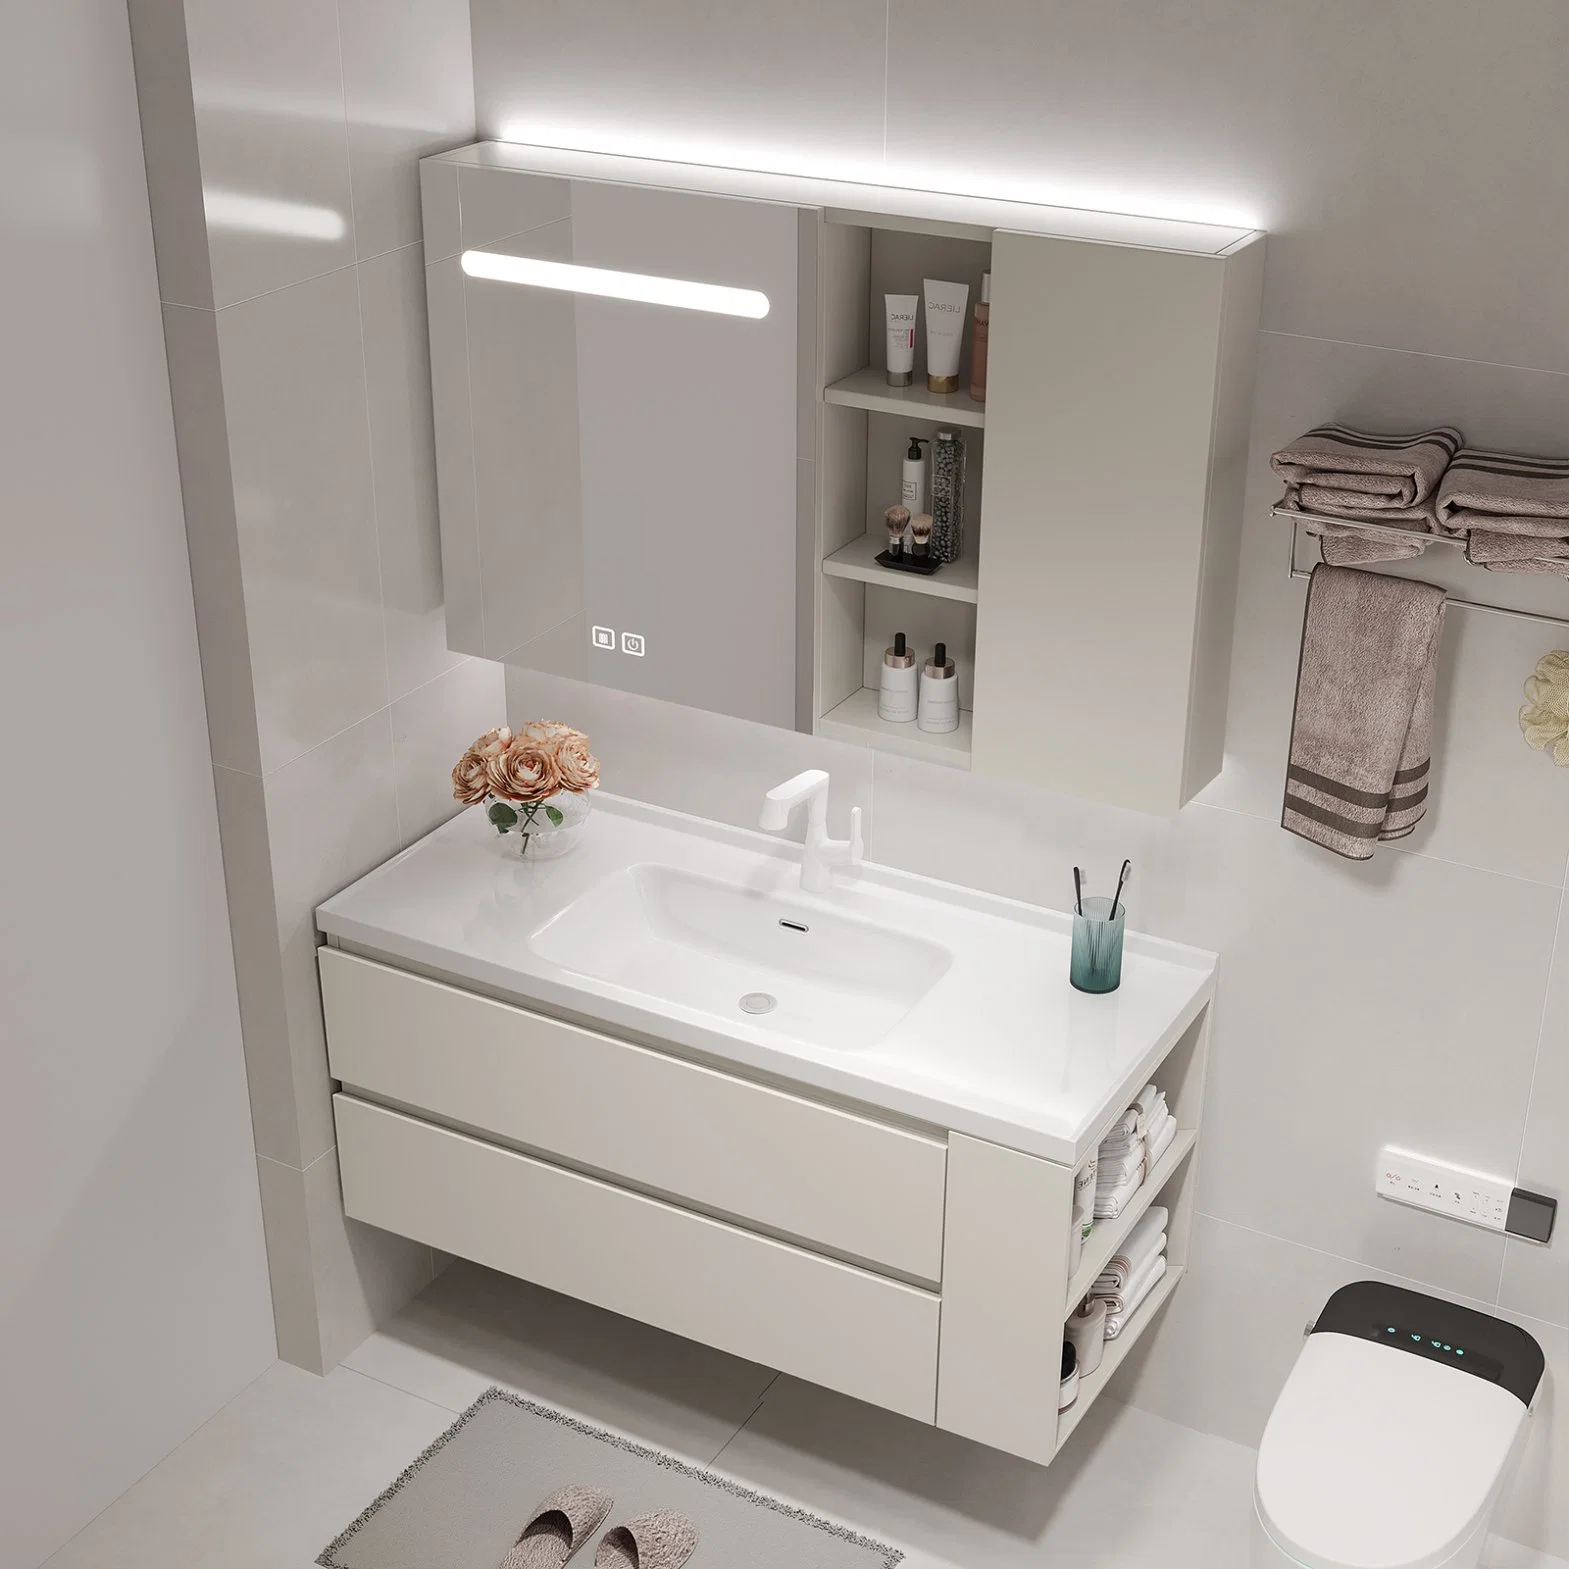 Meuble-lavabo flottant de haute qualité, mur d'angle, salle de bains moderne en bois Meuble-lavabo salle de bains meuble-lavabo